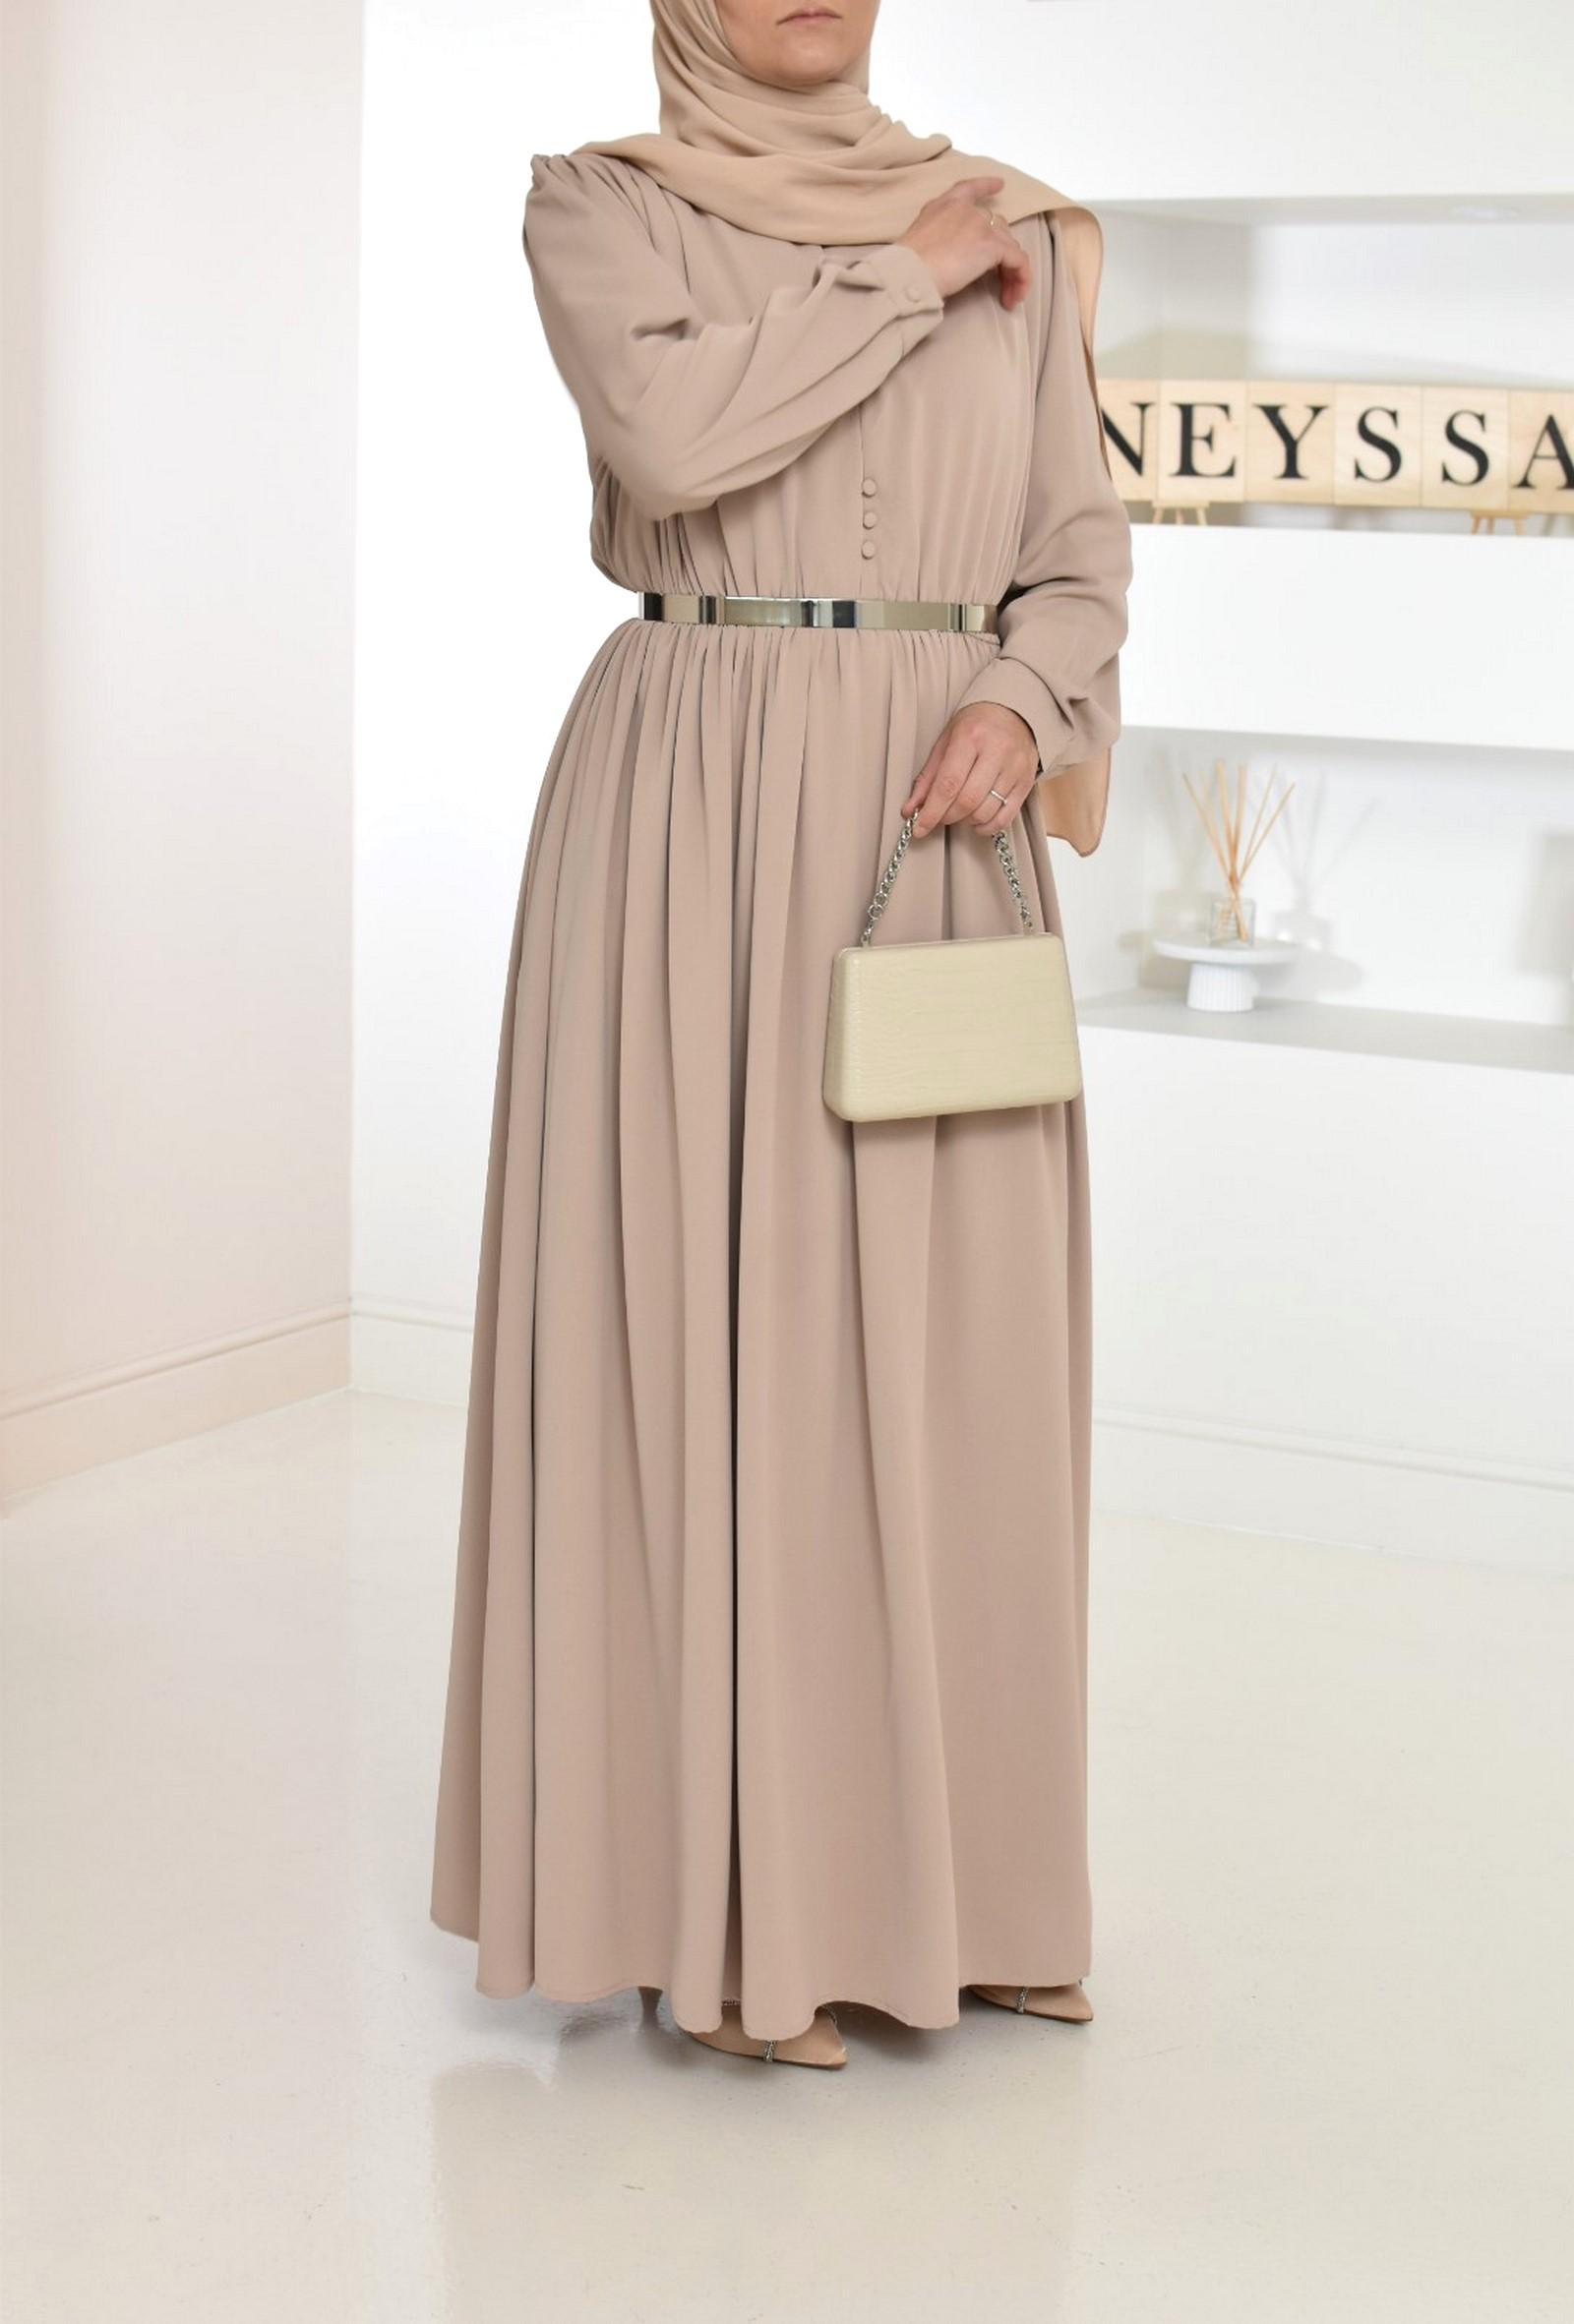 Robe de soirée musulmane - Boutique Neyssa Shop - Neyssa Boutique